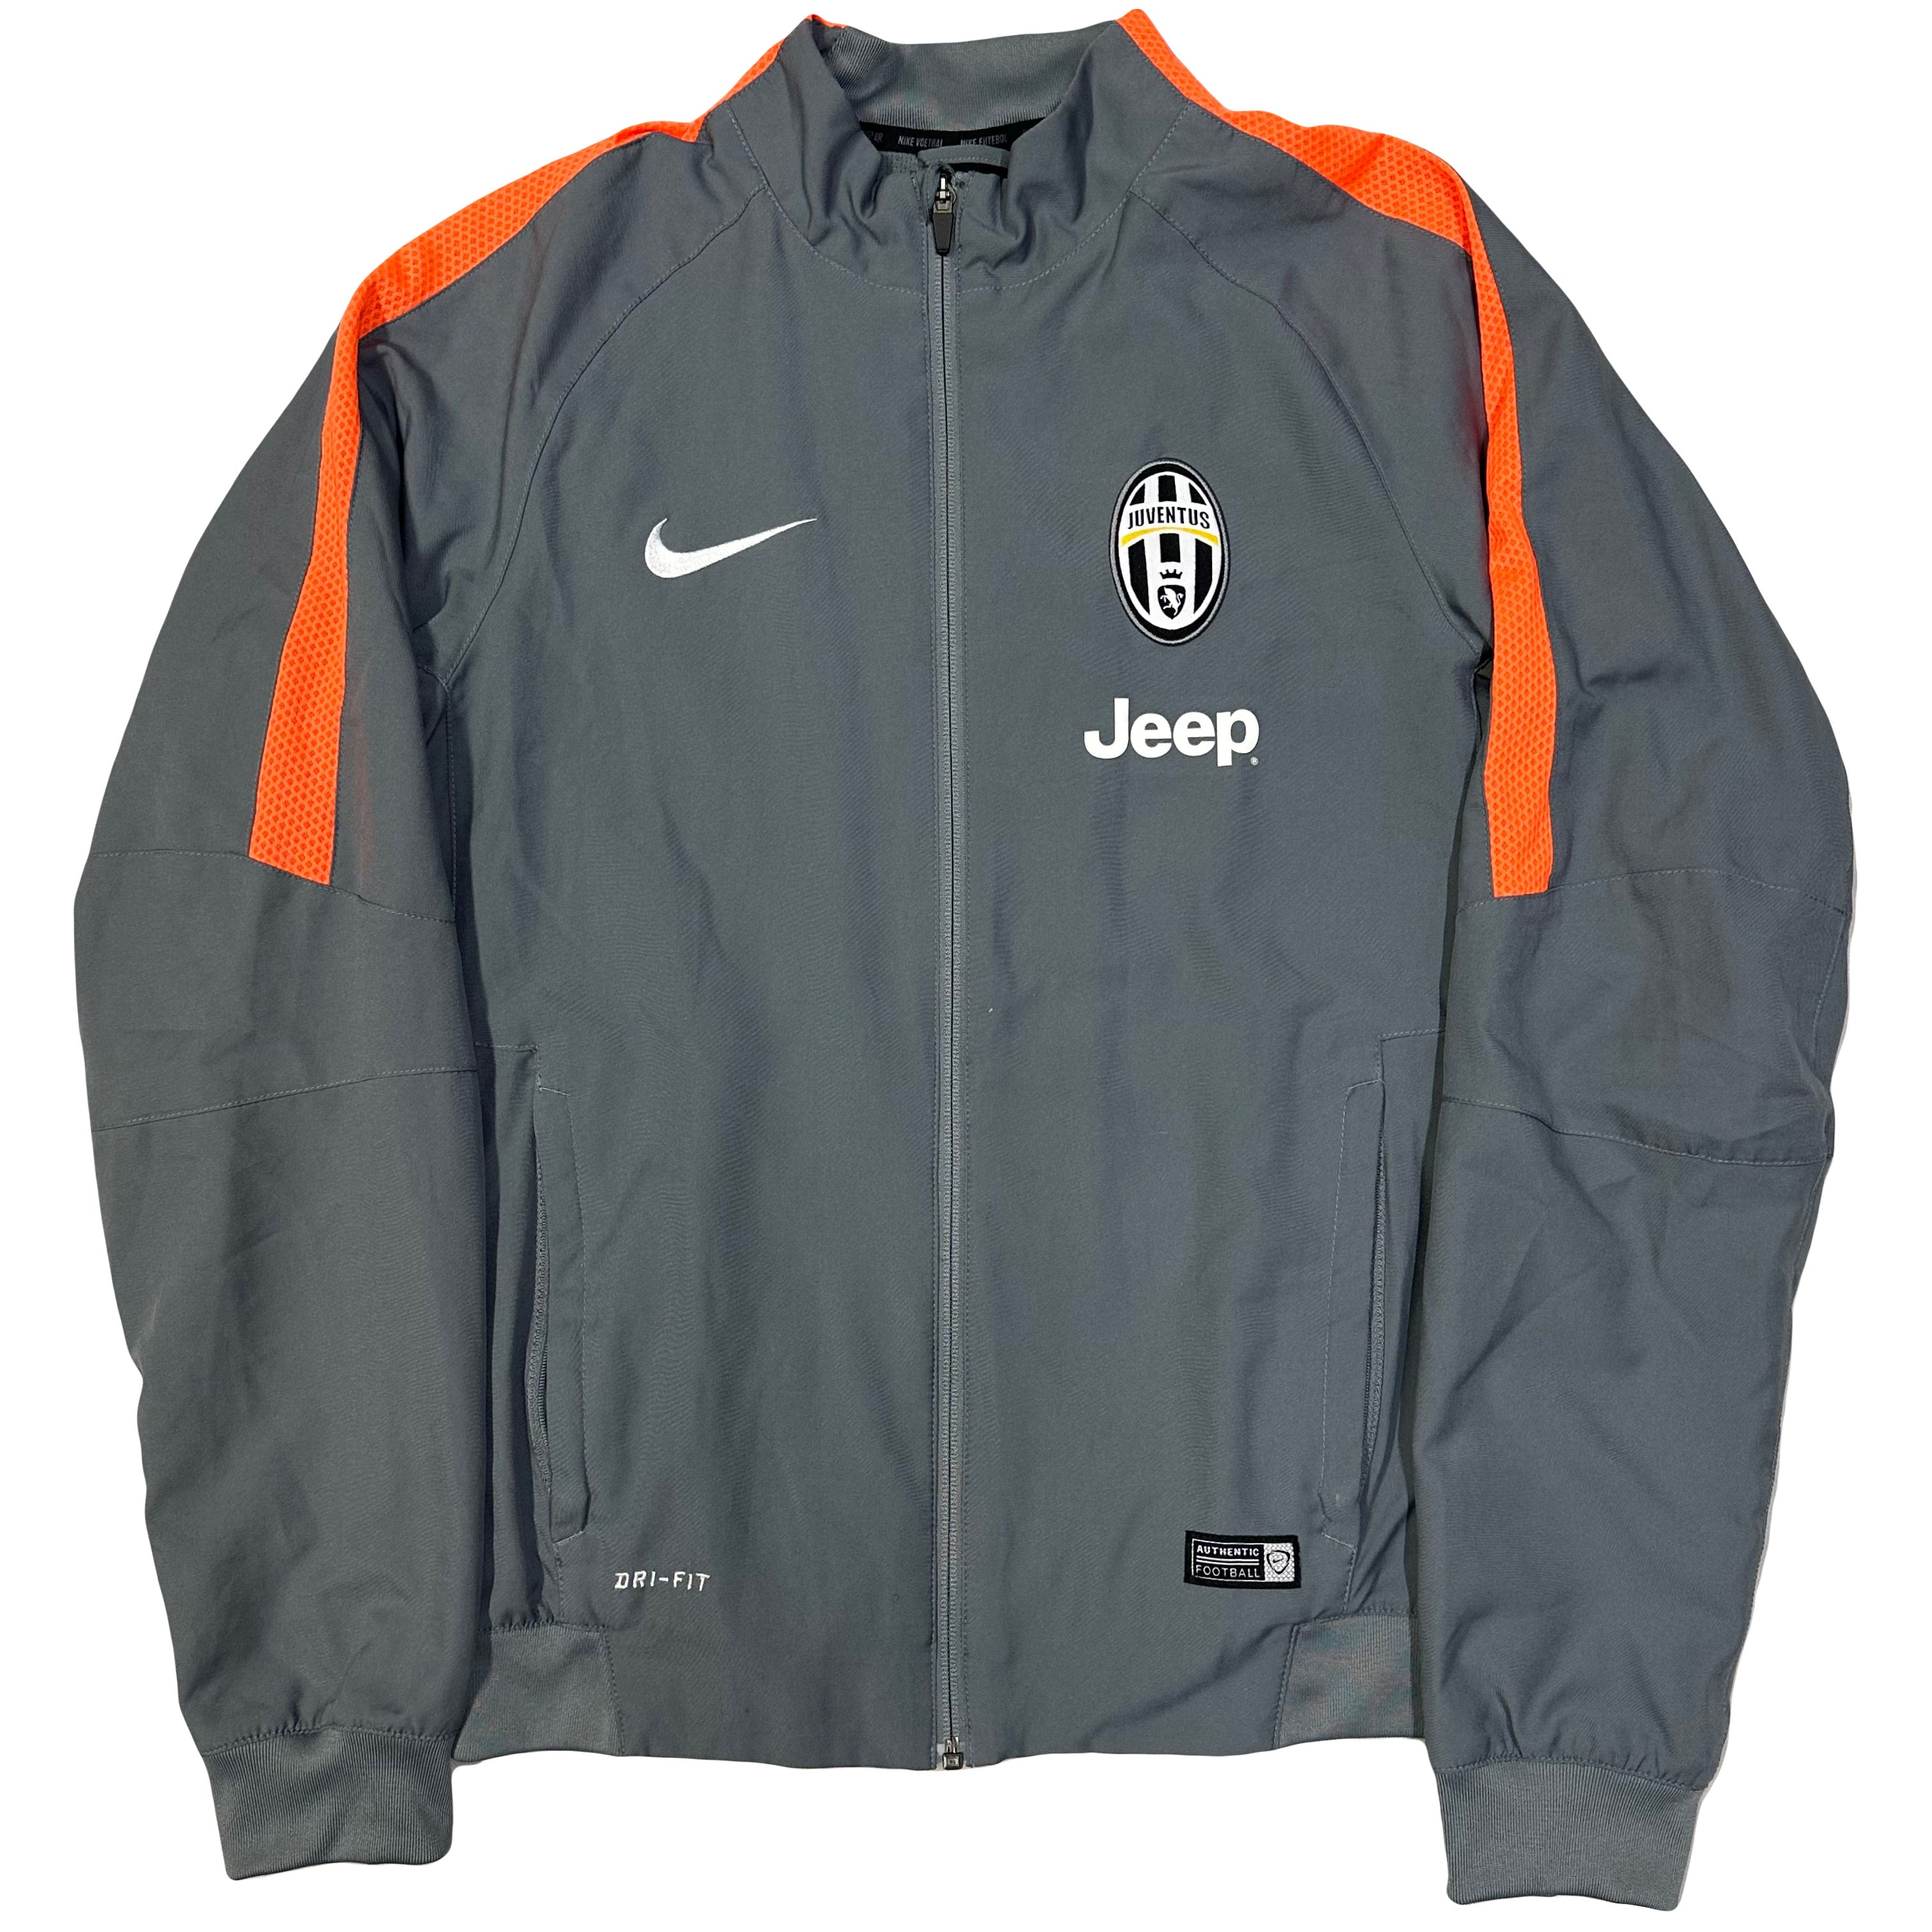 Nike Juventus 2014/15 Tracksuit In Grey & Orange ( M )